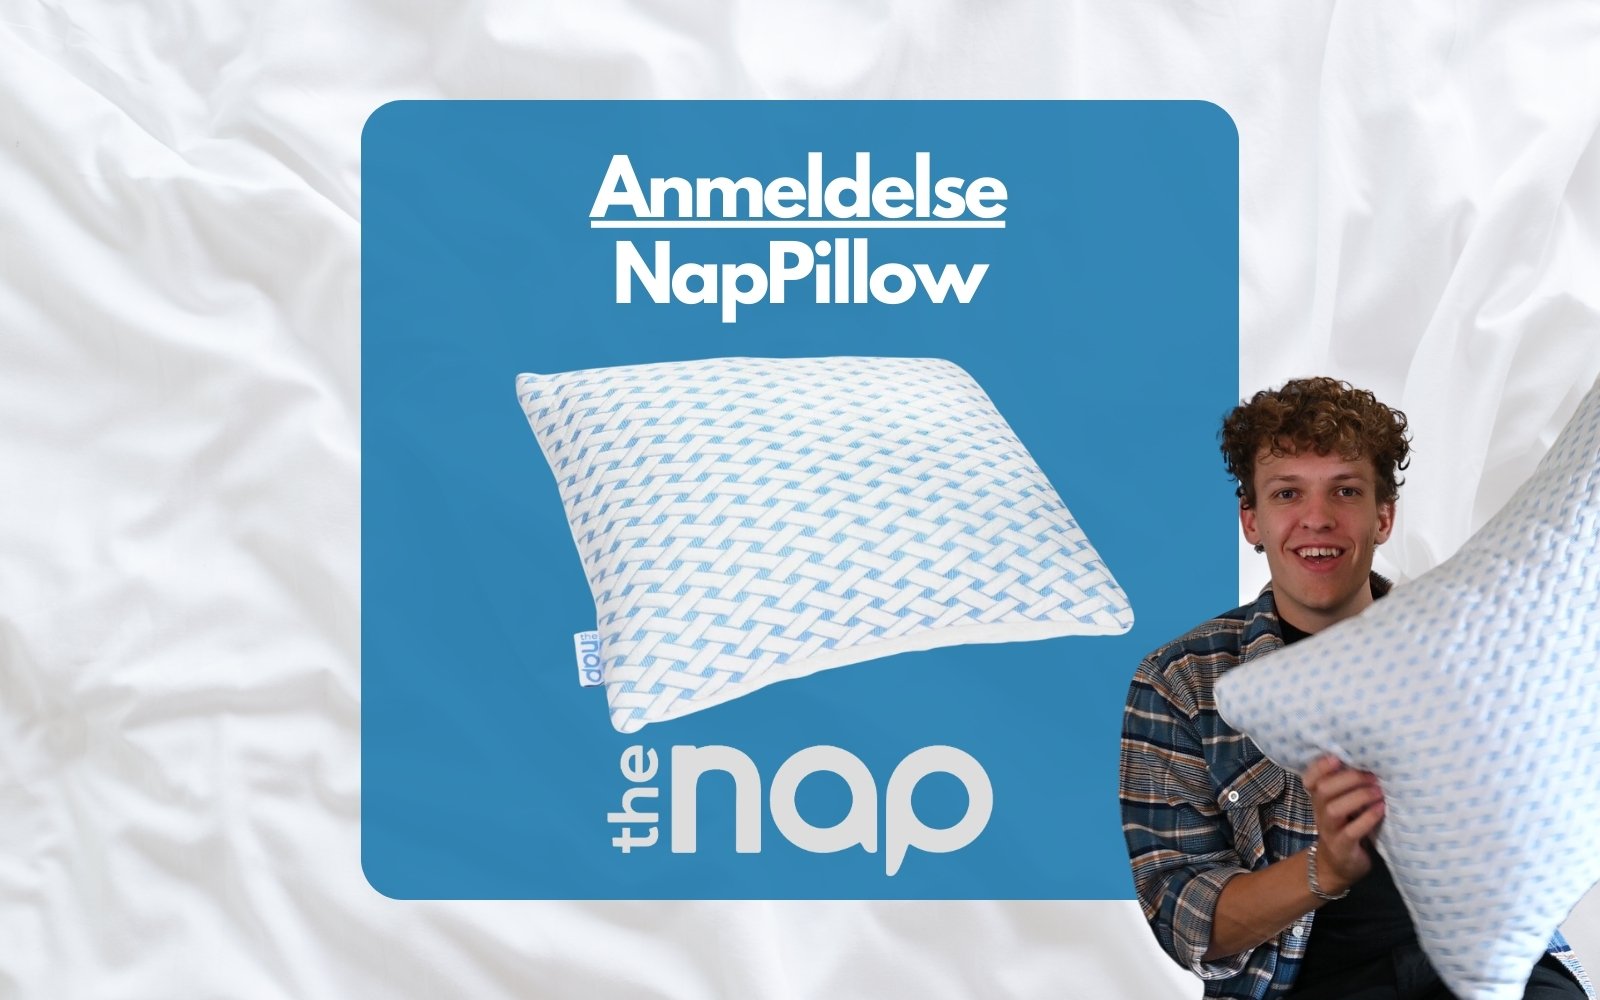 Coverbillede hvor der står "Anmeldelse NapPillow" og et billede af hovedpuden + person som holder hovedpuden